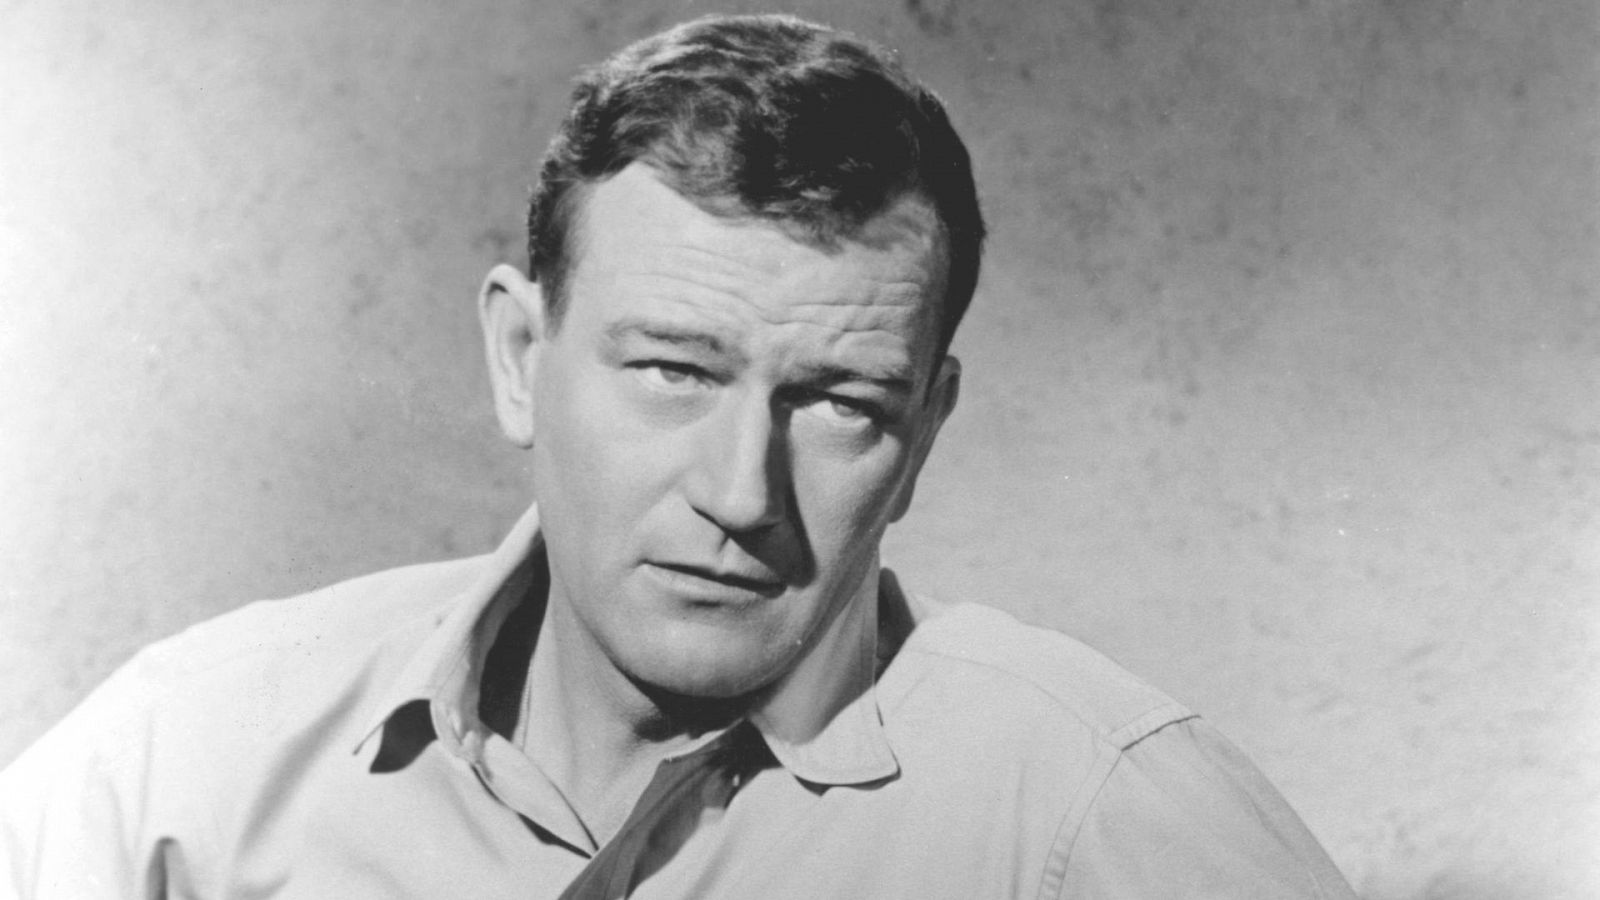 El actor John Wayne, conocido por sus películas sobre el Salvaje Oeste, estuvo casado hasta en tres ocasiones.